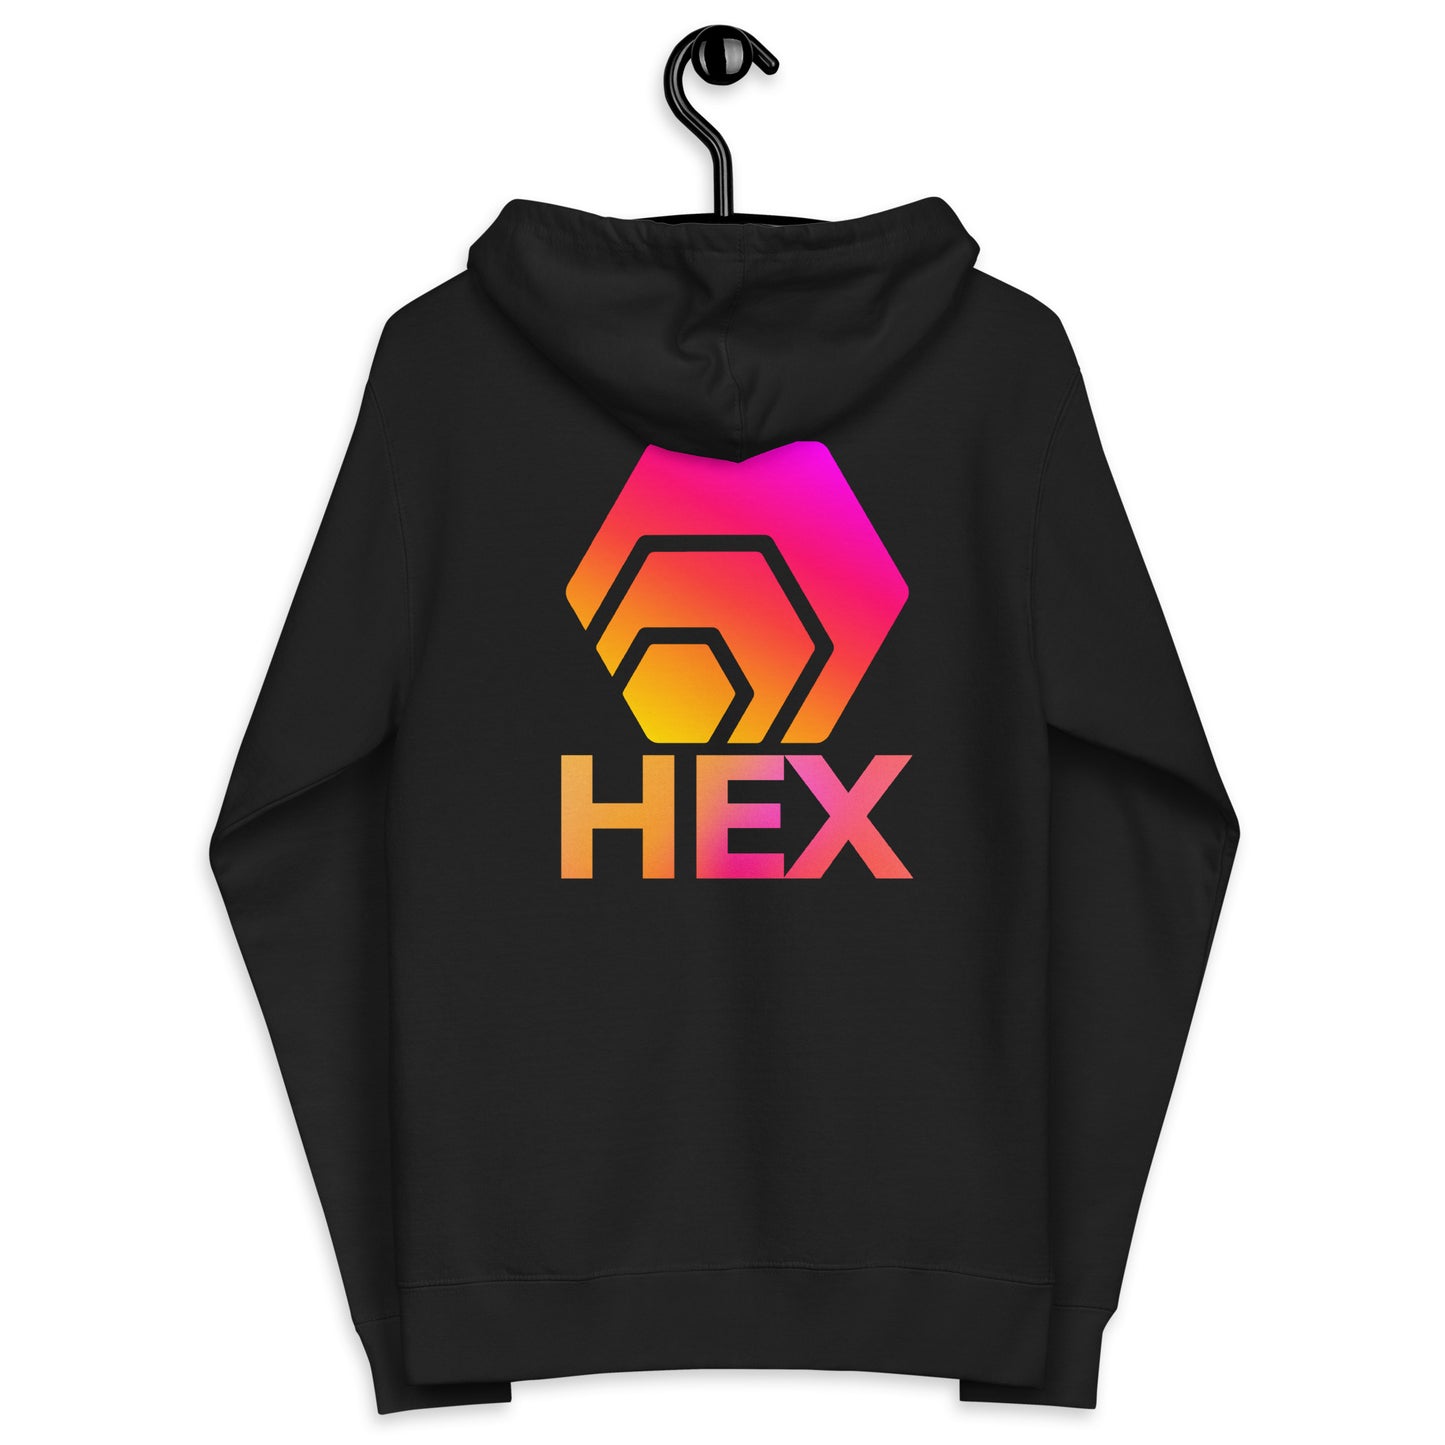 HEX Unisex Fleece Zip Up Hoodie (Front & Back)